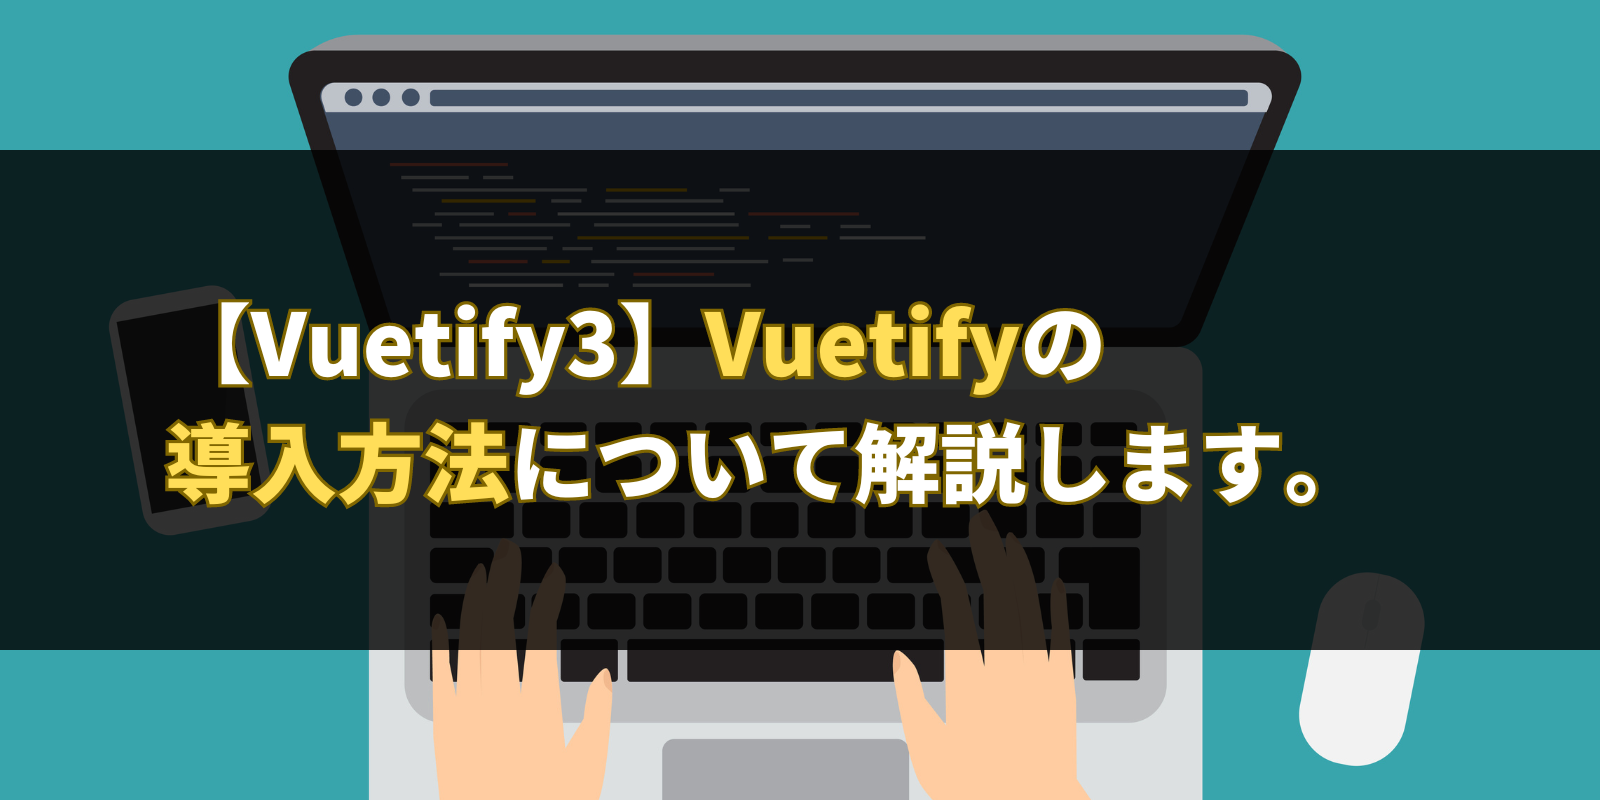 【Vuetify3】Vuetifyの導入方法について解説します。